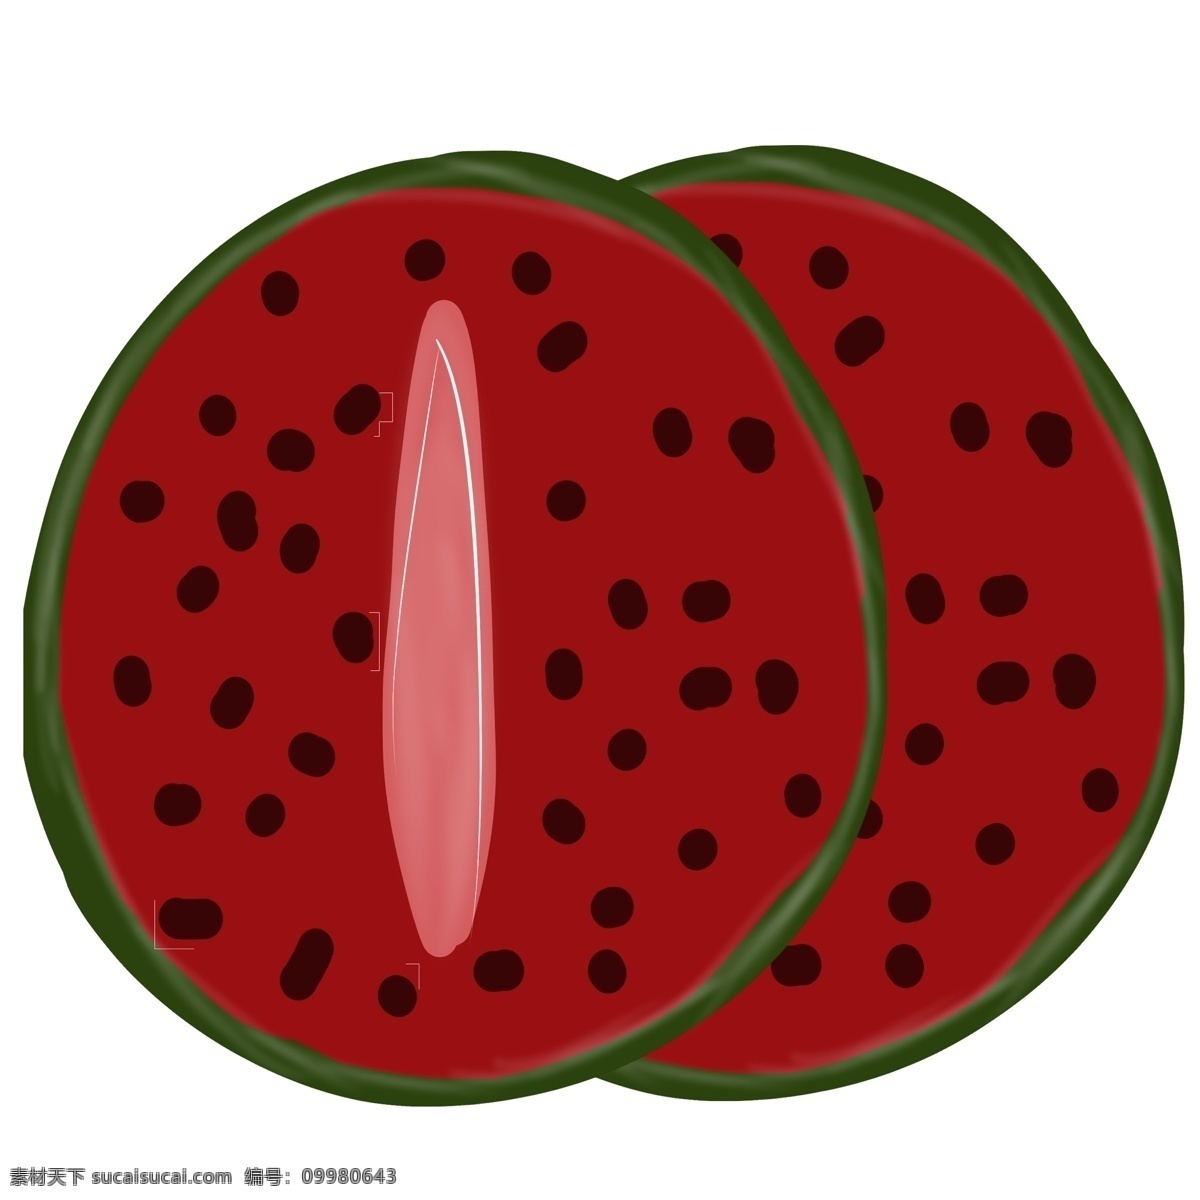 切开 两个 西瓜 水果 切开的西瓜 表情 笑脸 睡觉 口水 点缀 装饰 贴画 瓜皮 很薄的 大红